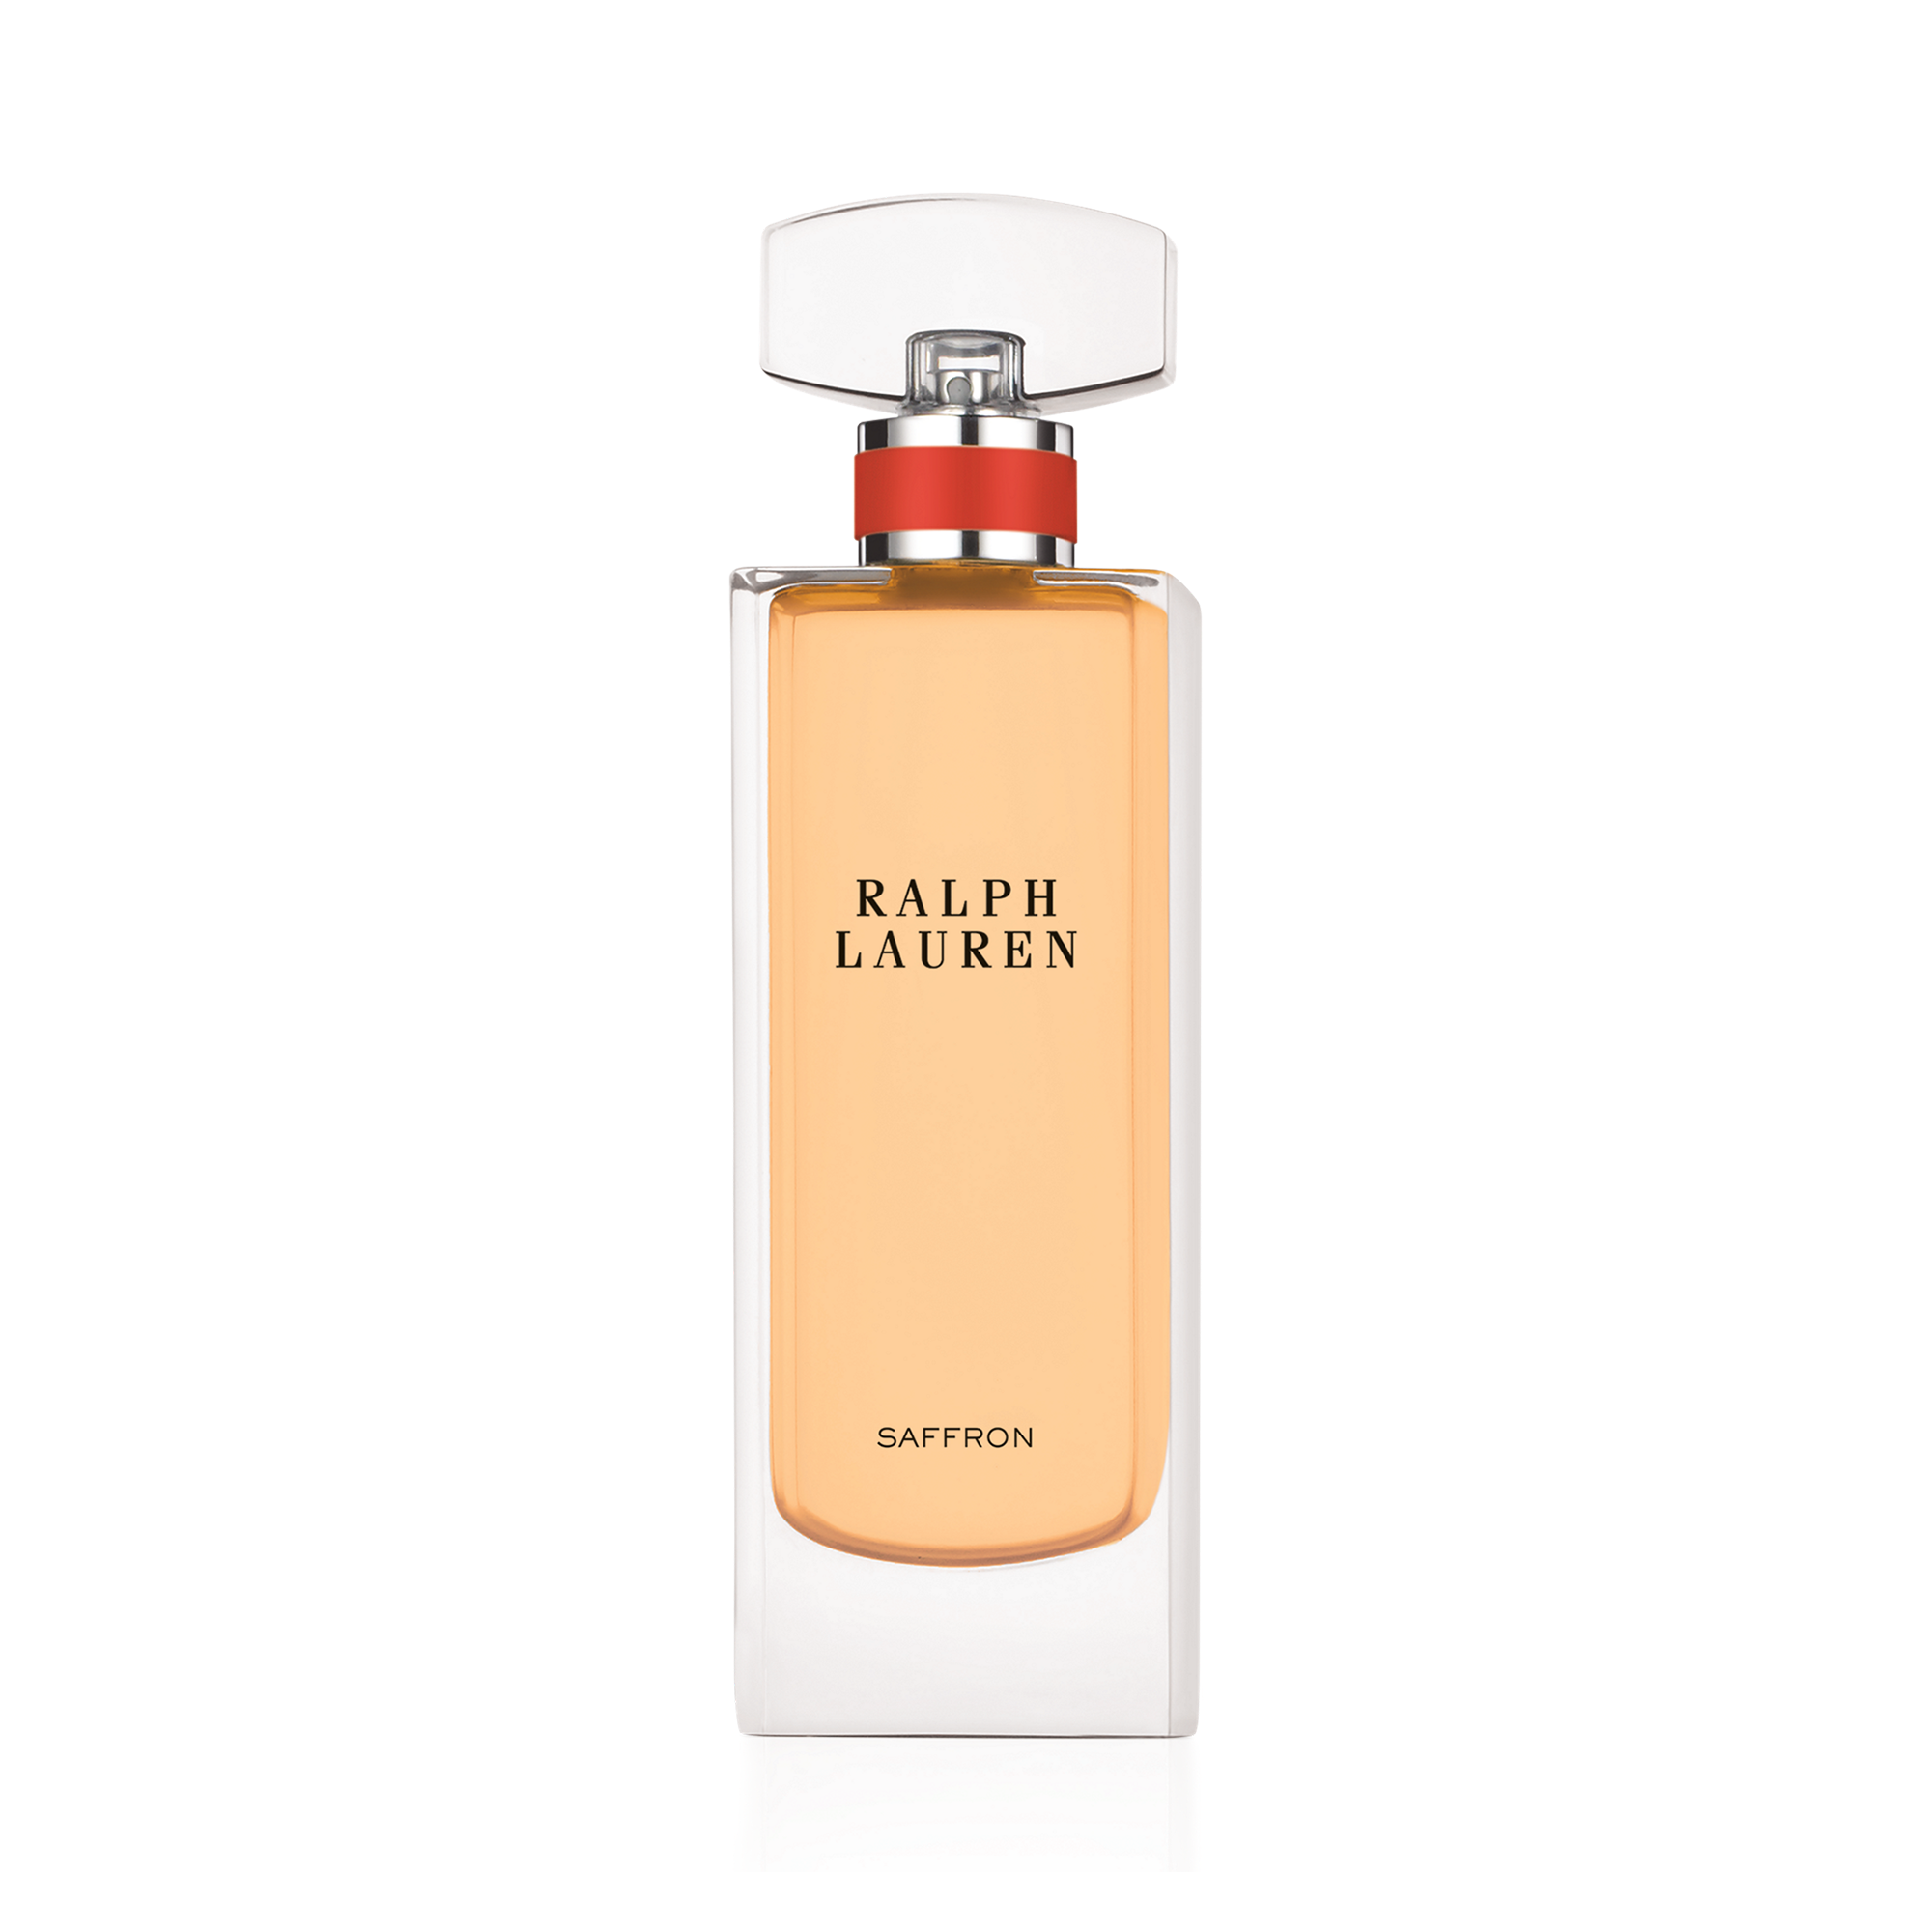 Ralph Lauren Saffron Eau de Parfum. 1